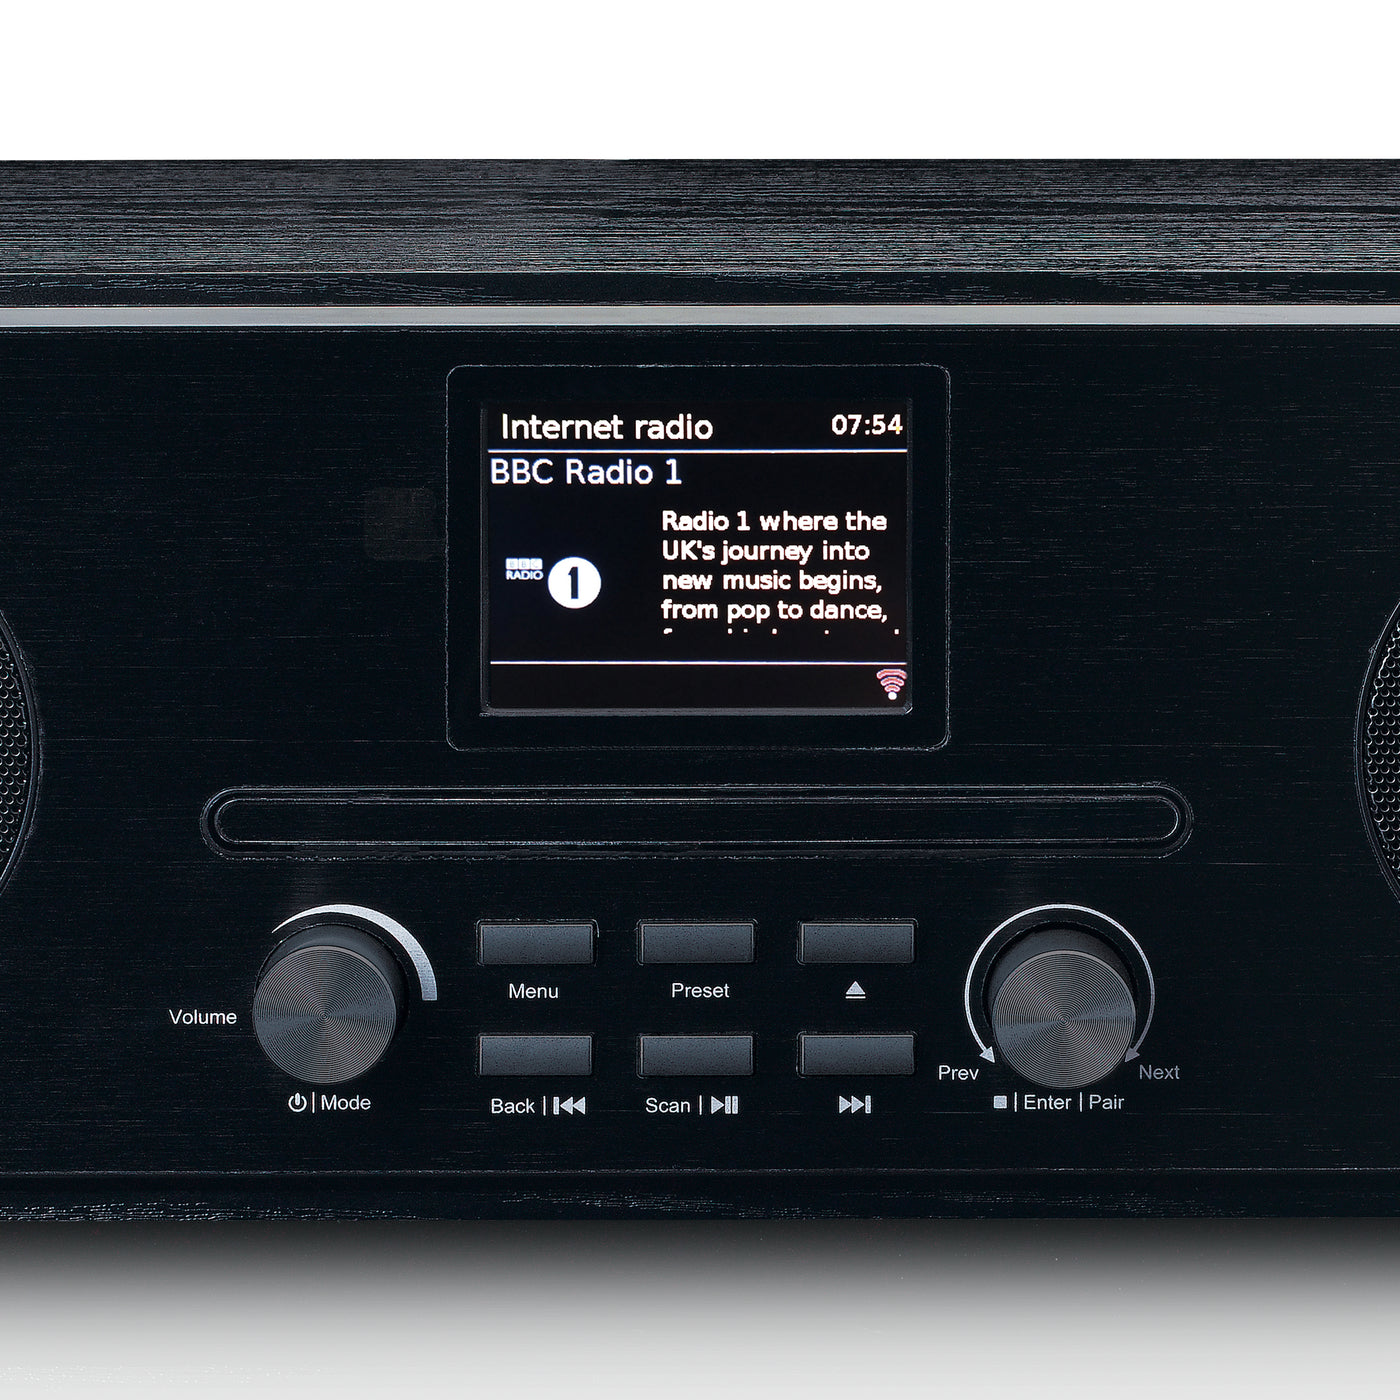 Lenco DIR-261BK - Radio Internet/DAB+/FM avec lecteur CD et Bluetooth®, noir